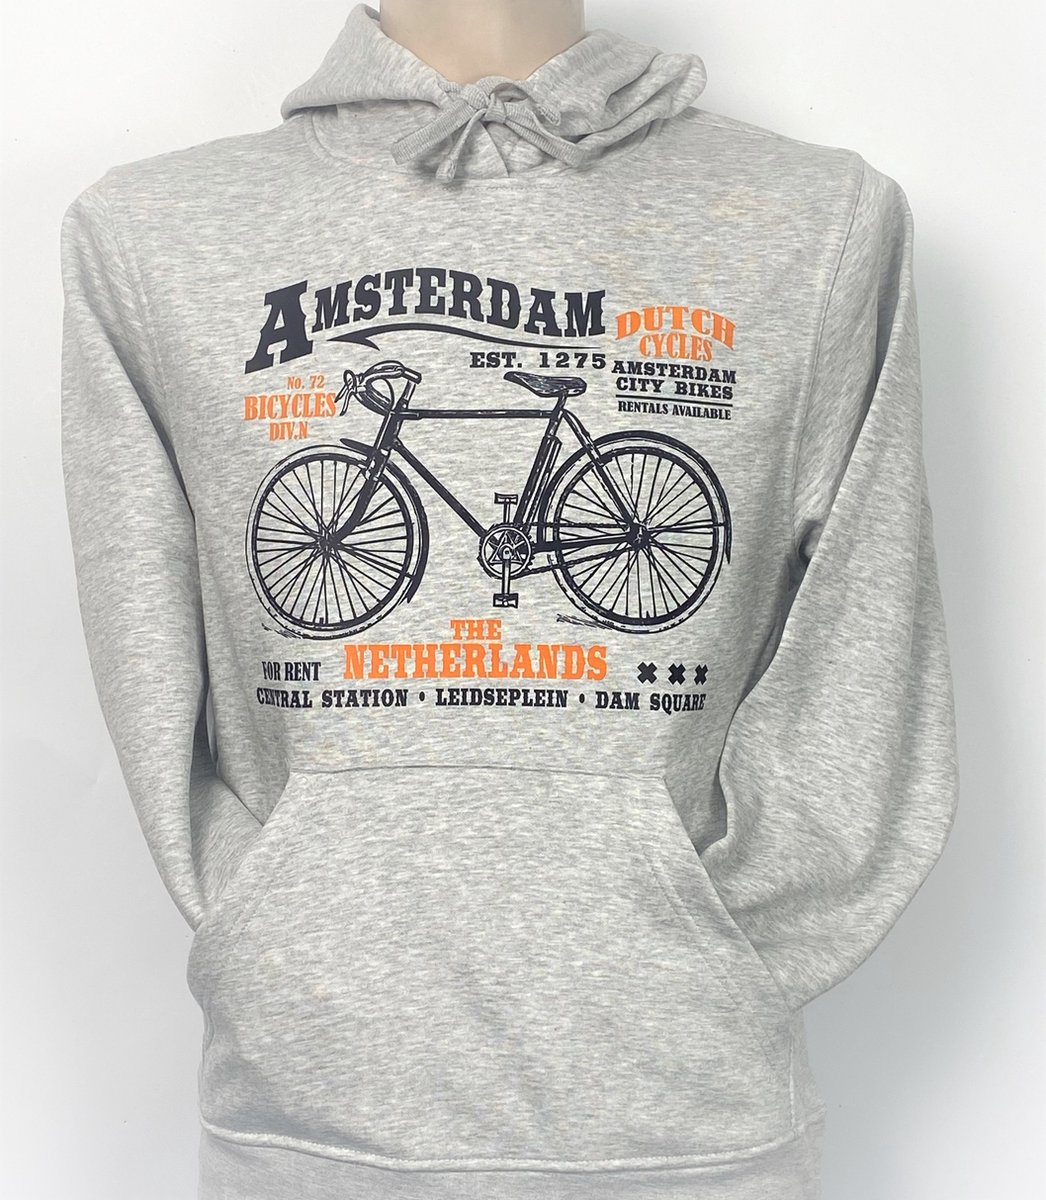 Hooded Sweater - Met Trekkoord - Capuchon - Chill - Trui - Vest - met capuchon - Outdoor - Fiets - 1275 -Amsterdam - Bike Town - Travel - Dam Square - City Bike - Sport Grey - Maat M